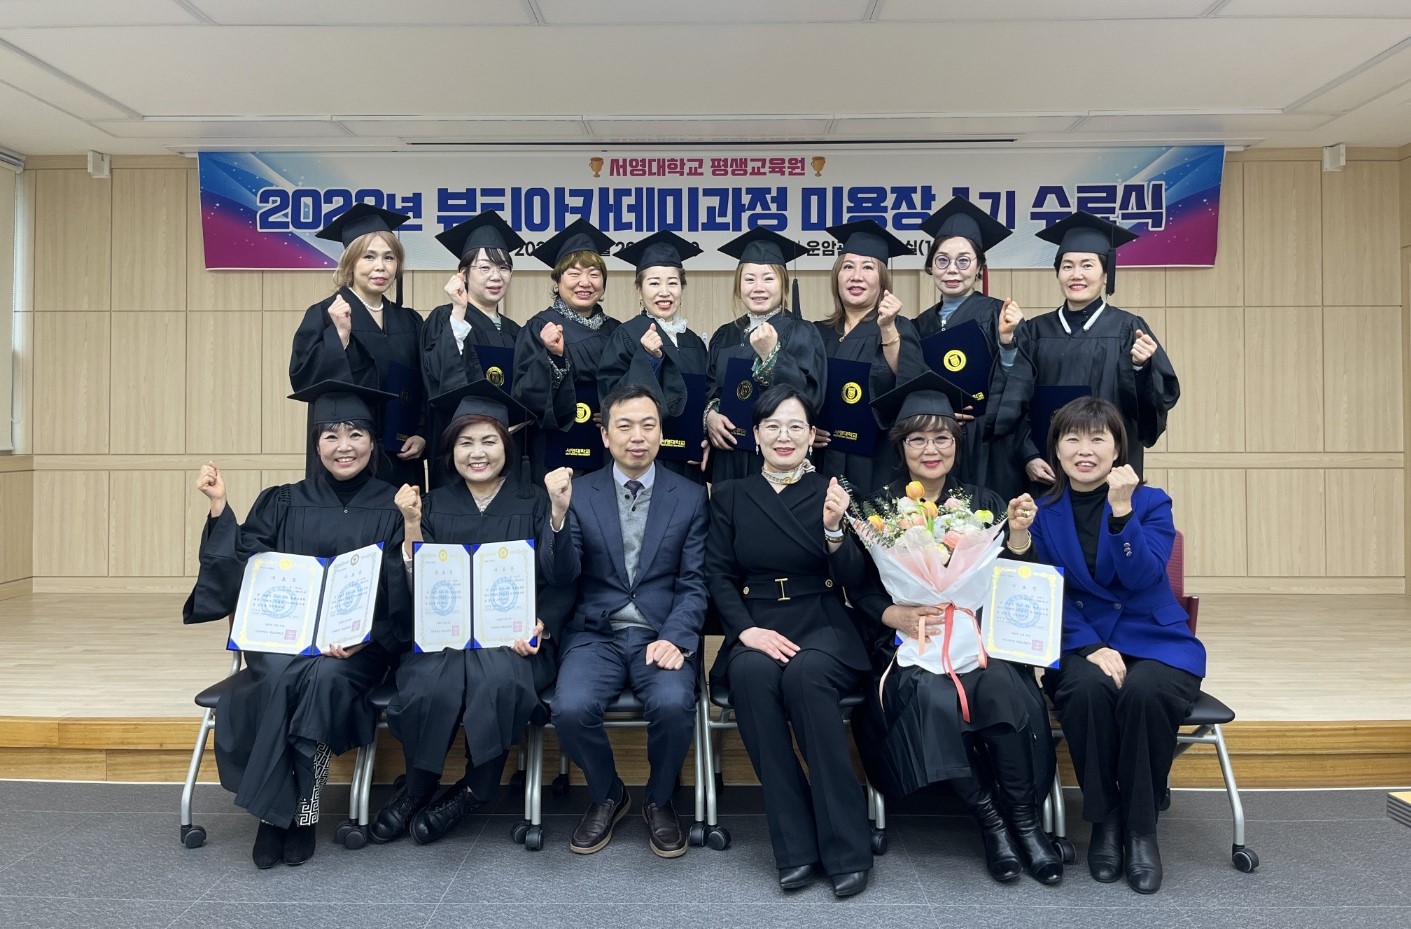 서영대 평생교육원, 뷰티아카데미 미용장 1기 수료식 개최 상세정보 페이지로 이동하기